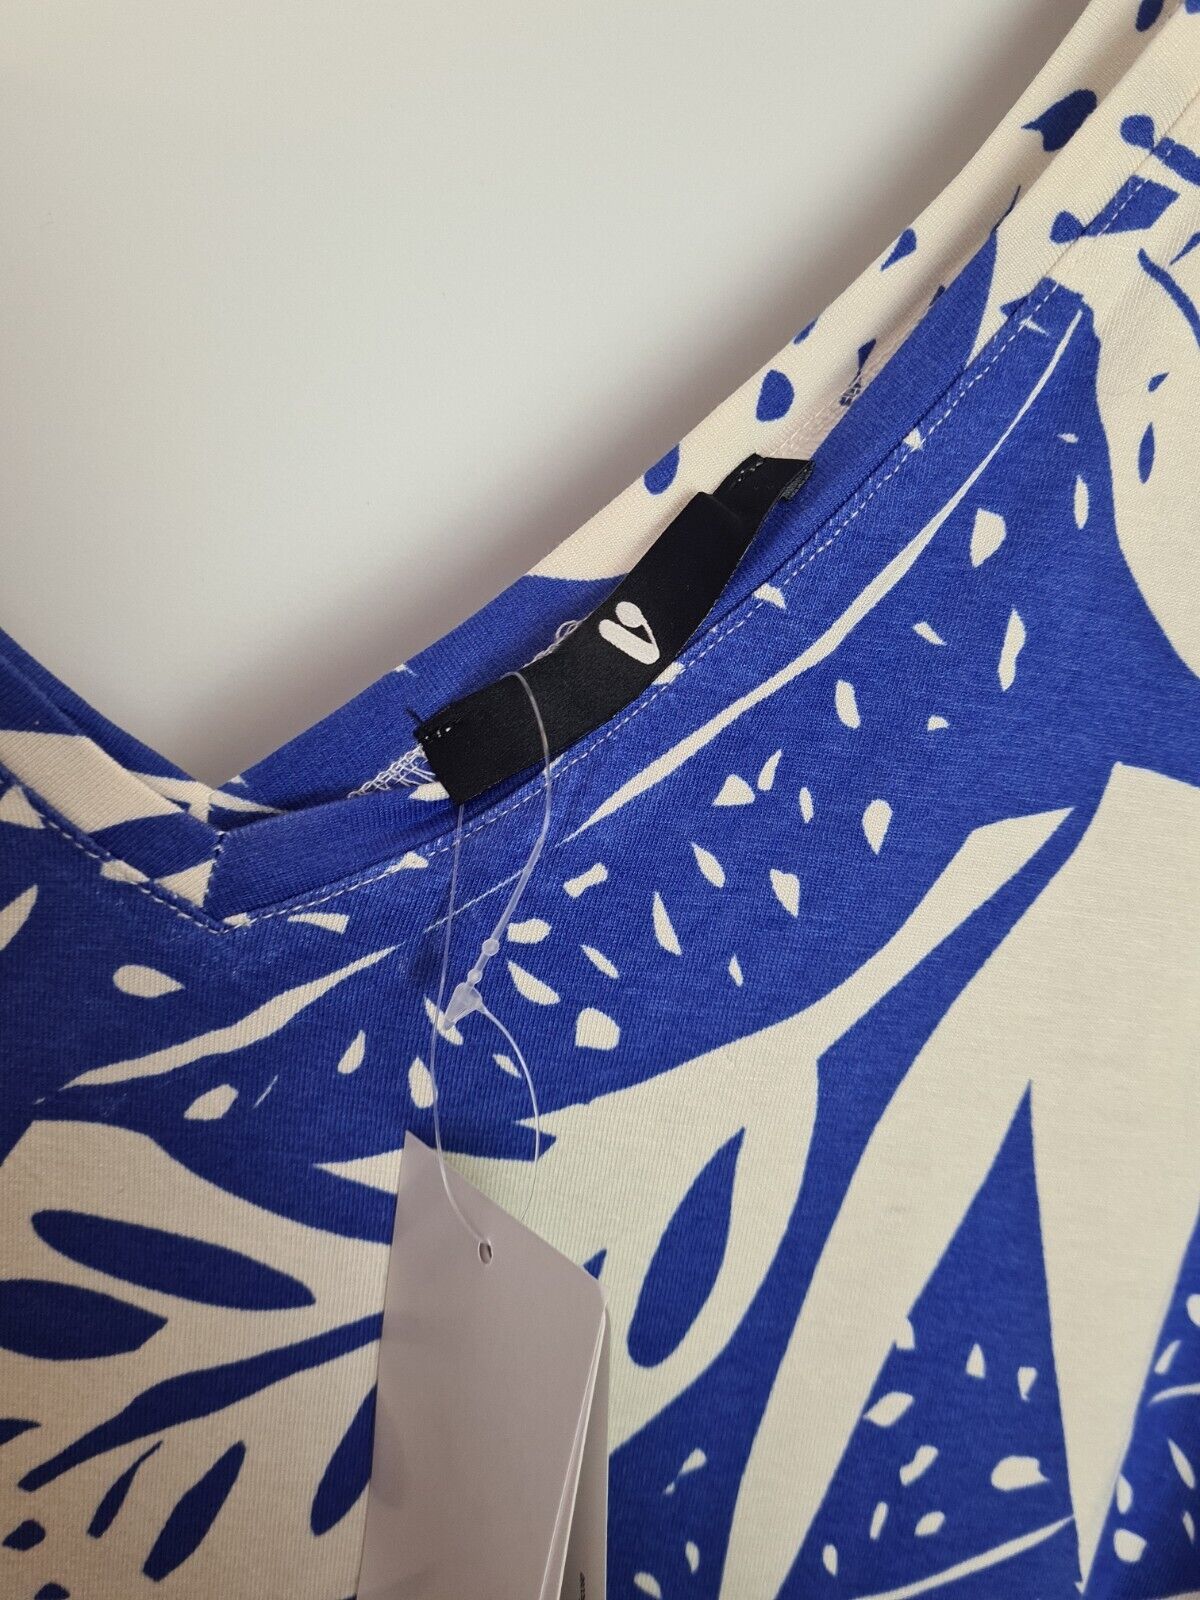 Blue And White Leaf Design Sleeveless V Neck Dress Size 22 **** V232